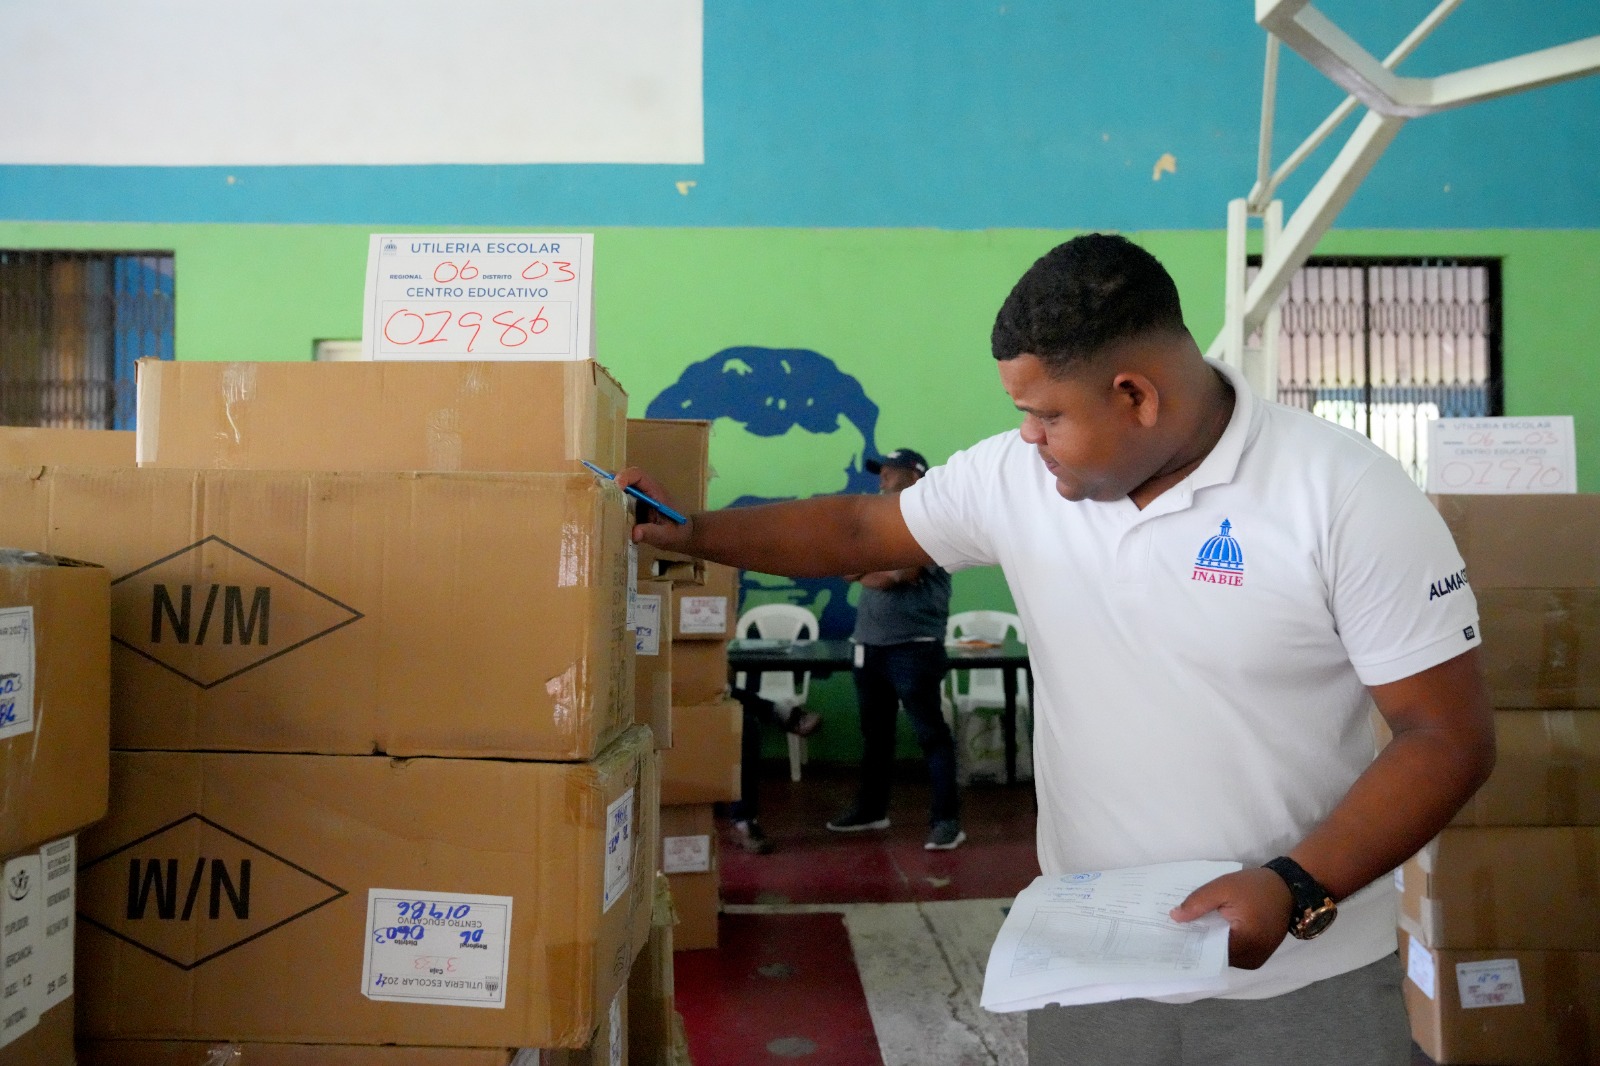 REPÚBLICA DOMINICANA: Inabie inicia con éxito el traslado de uniformes y útiles del próximo año escolar para todos los estudiantes